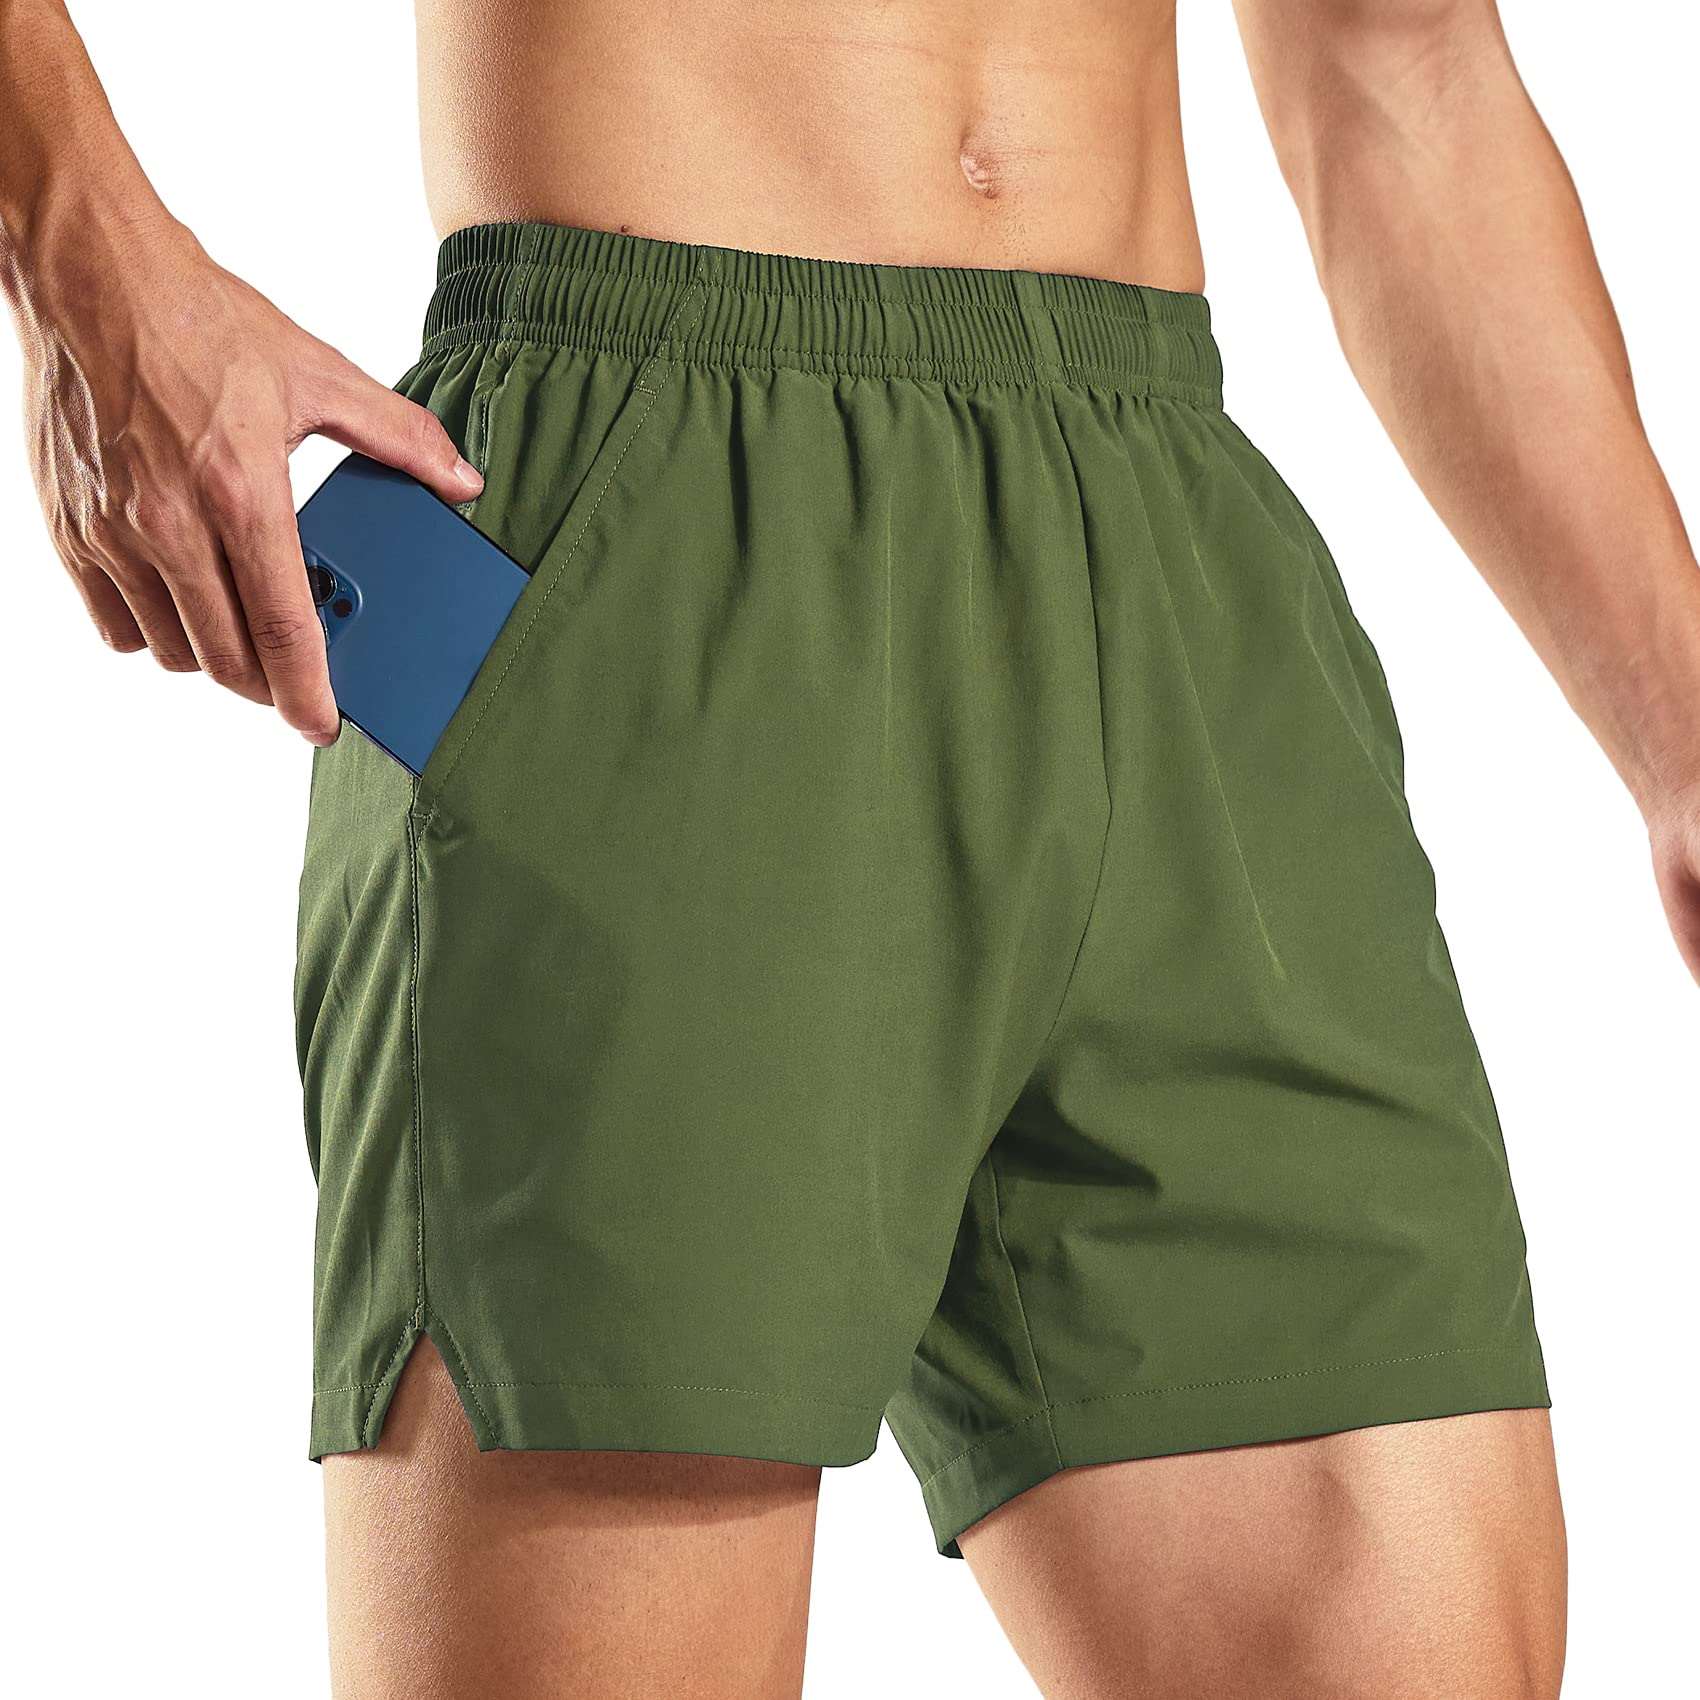 Nike drifit coral orange running athletic workout shorts size medium